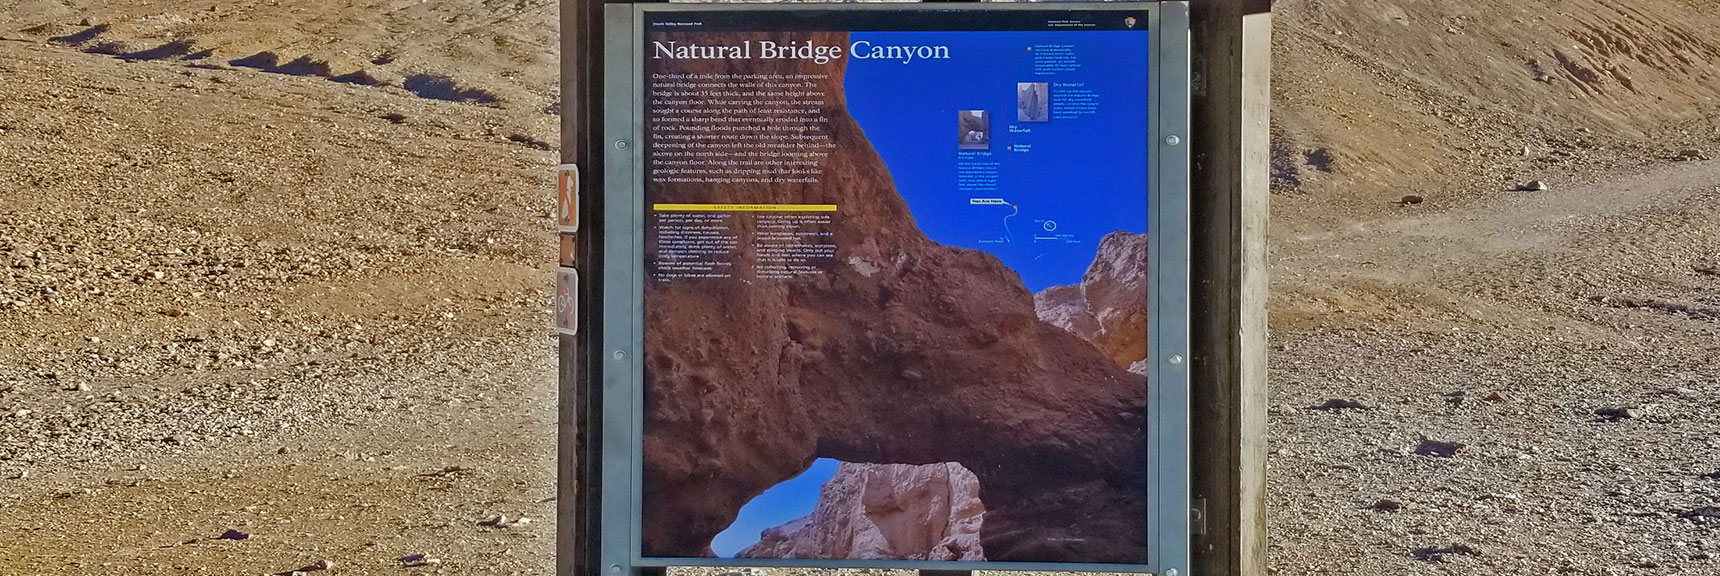 Natural Bridge Canyon Interpretive Sign at Trailhead | Natural Bridge Canyon | Death Valley National Park, California